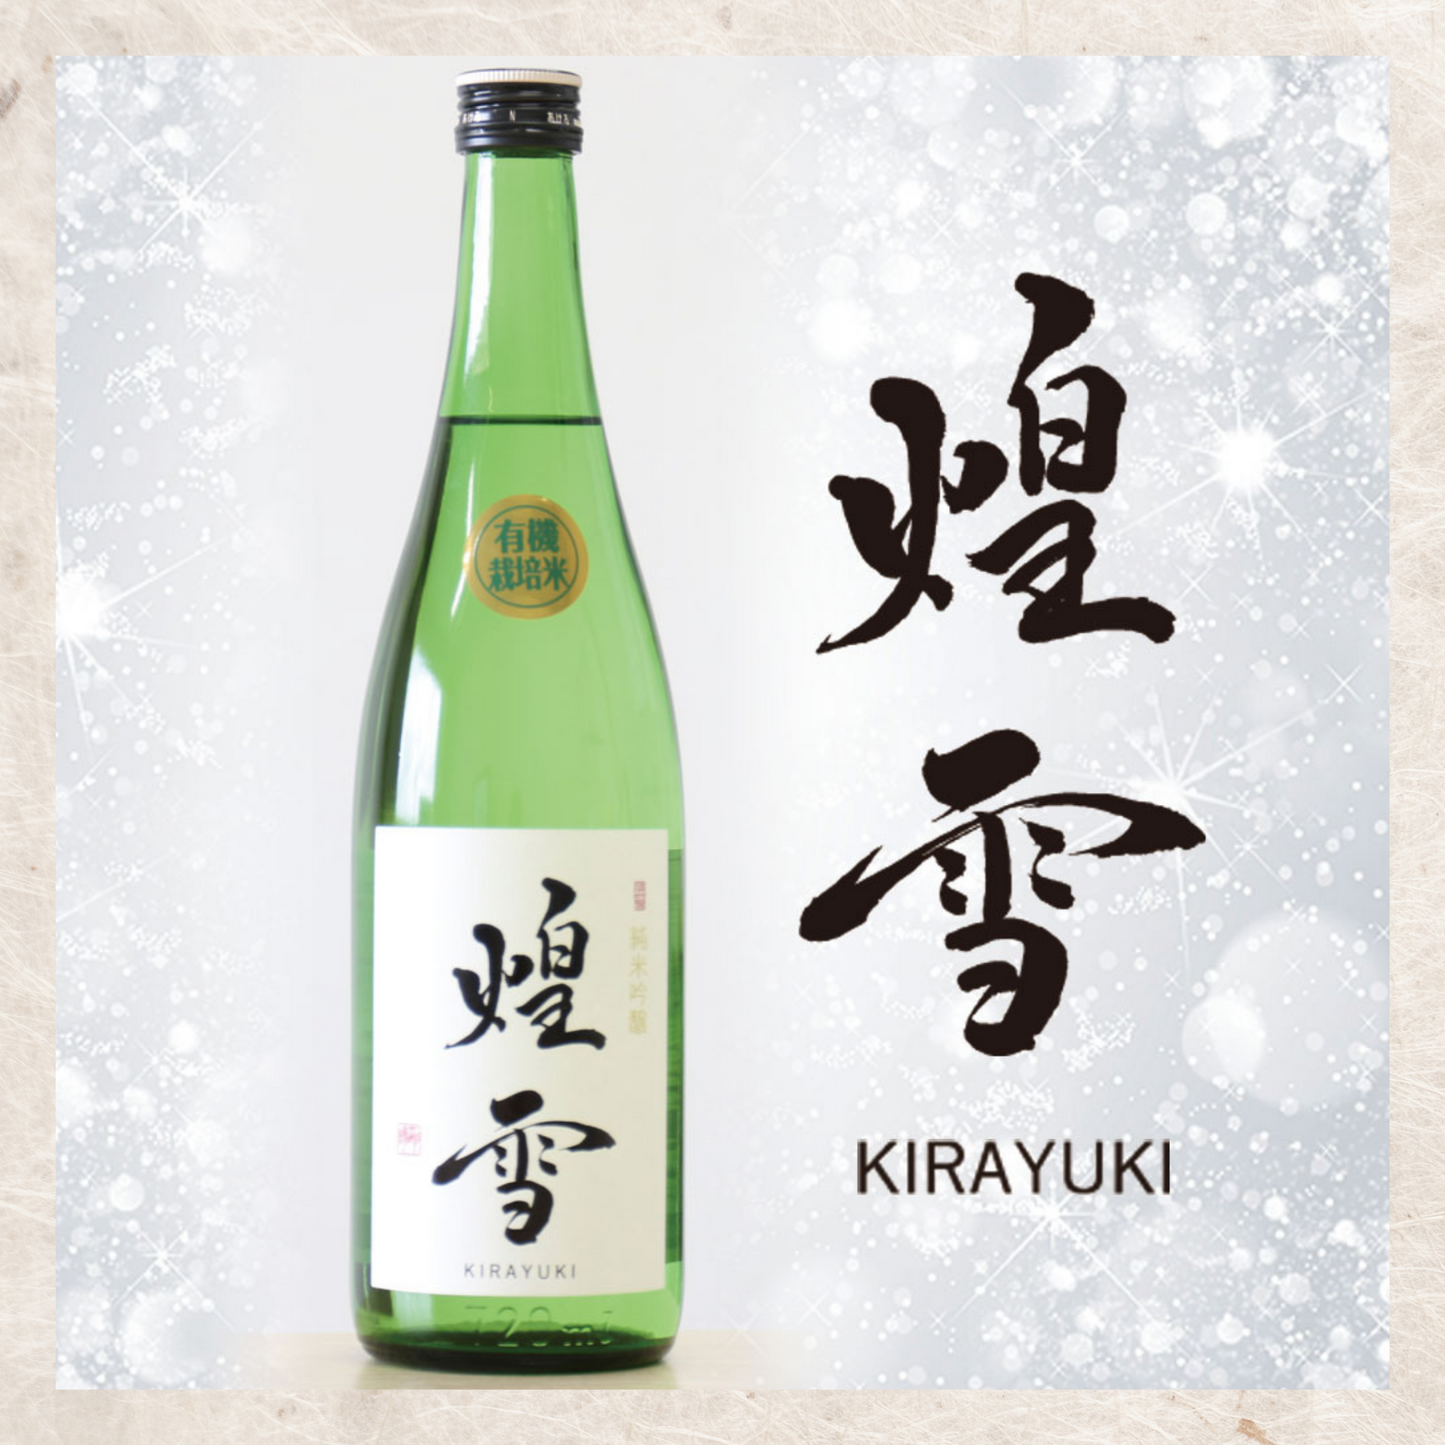 Organic Sake KIRAYUKI 煌雪 Junmai Ginjyo 720ml Tochigi Sagara fruity aromatic